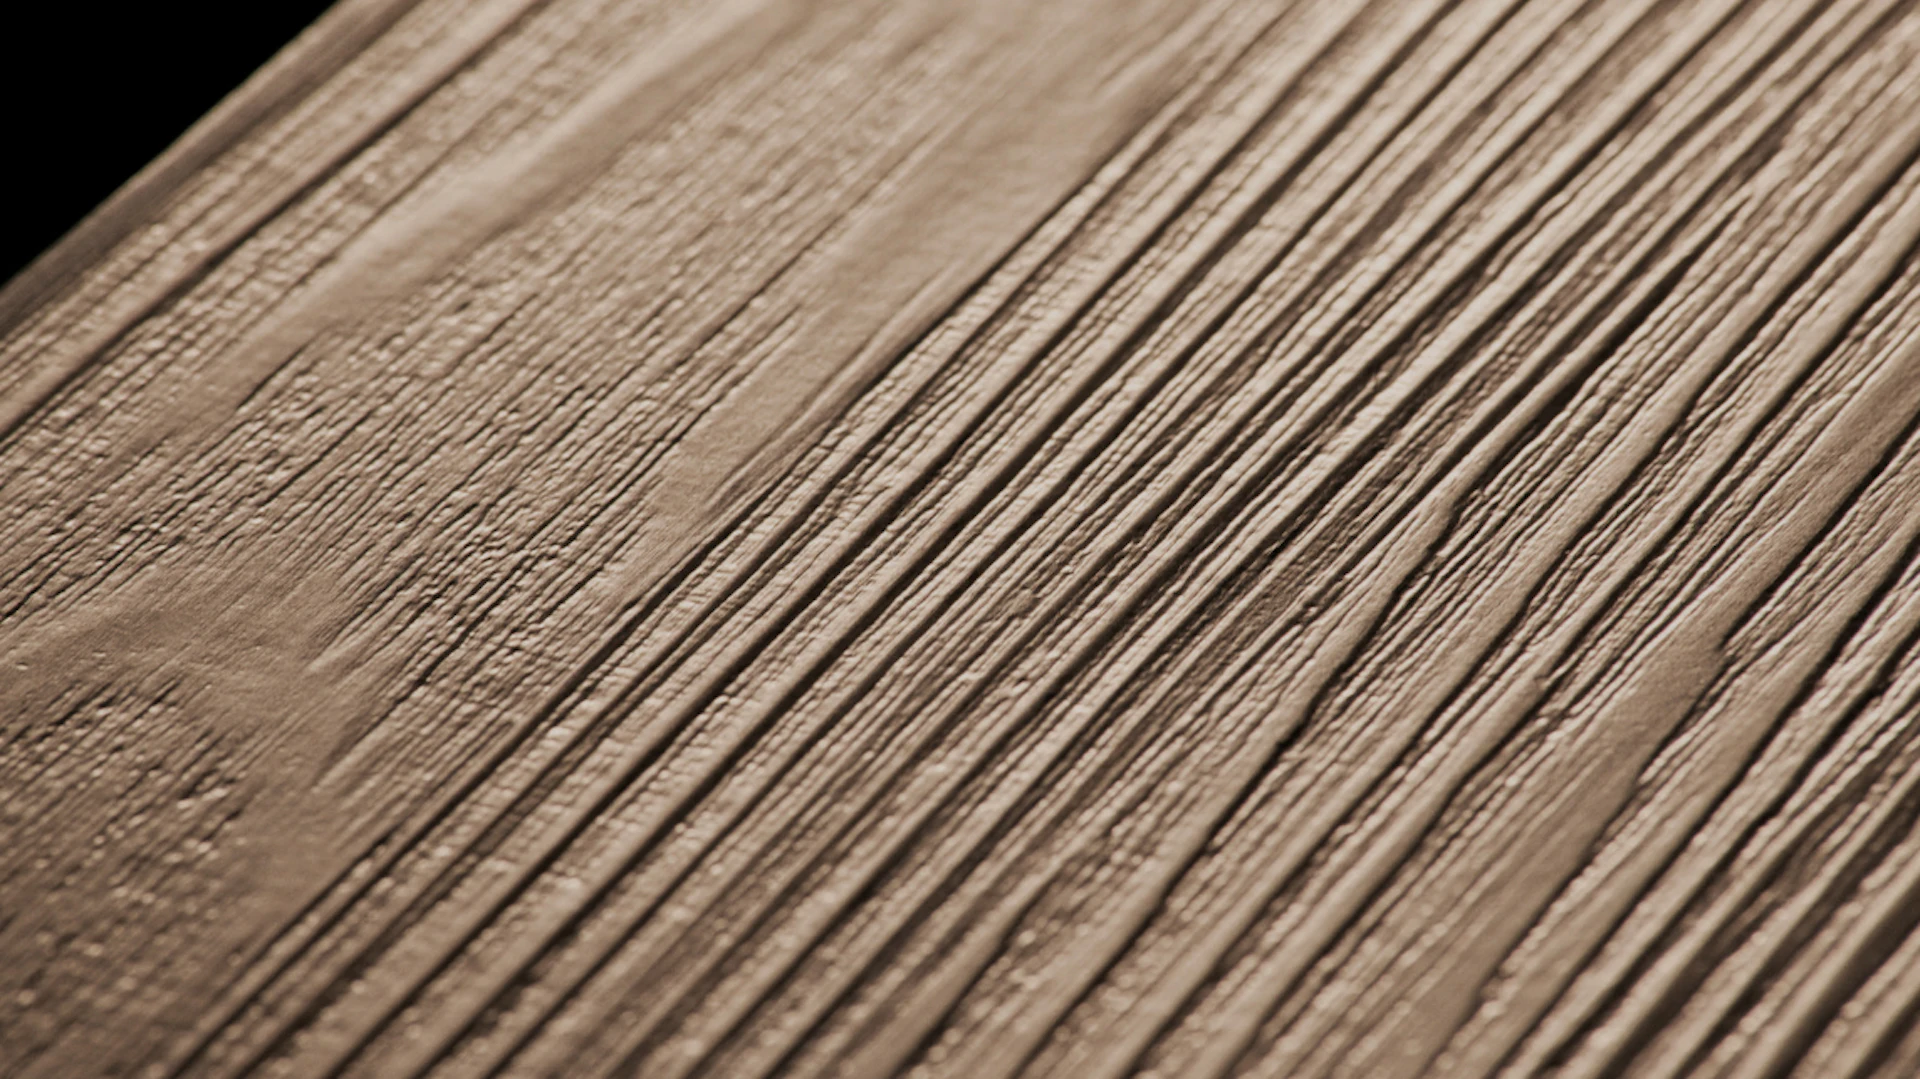 Project Floors adhesive Vinyl - floors@work55 PW 3115/55 (PW311555)